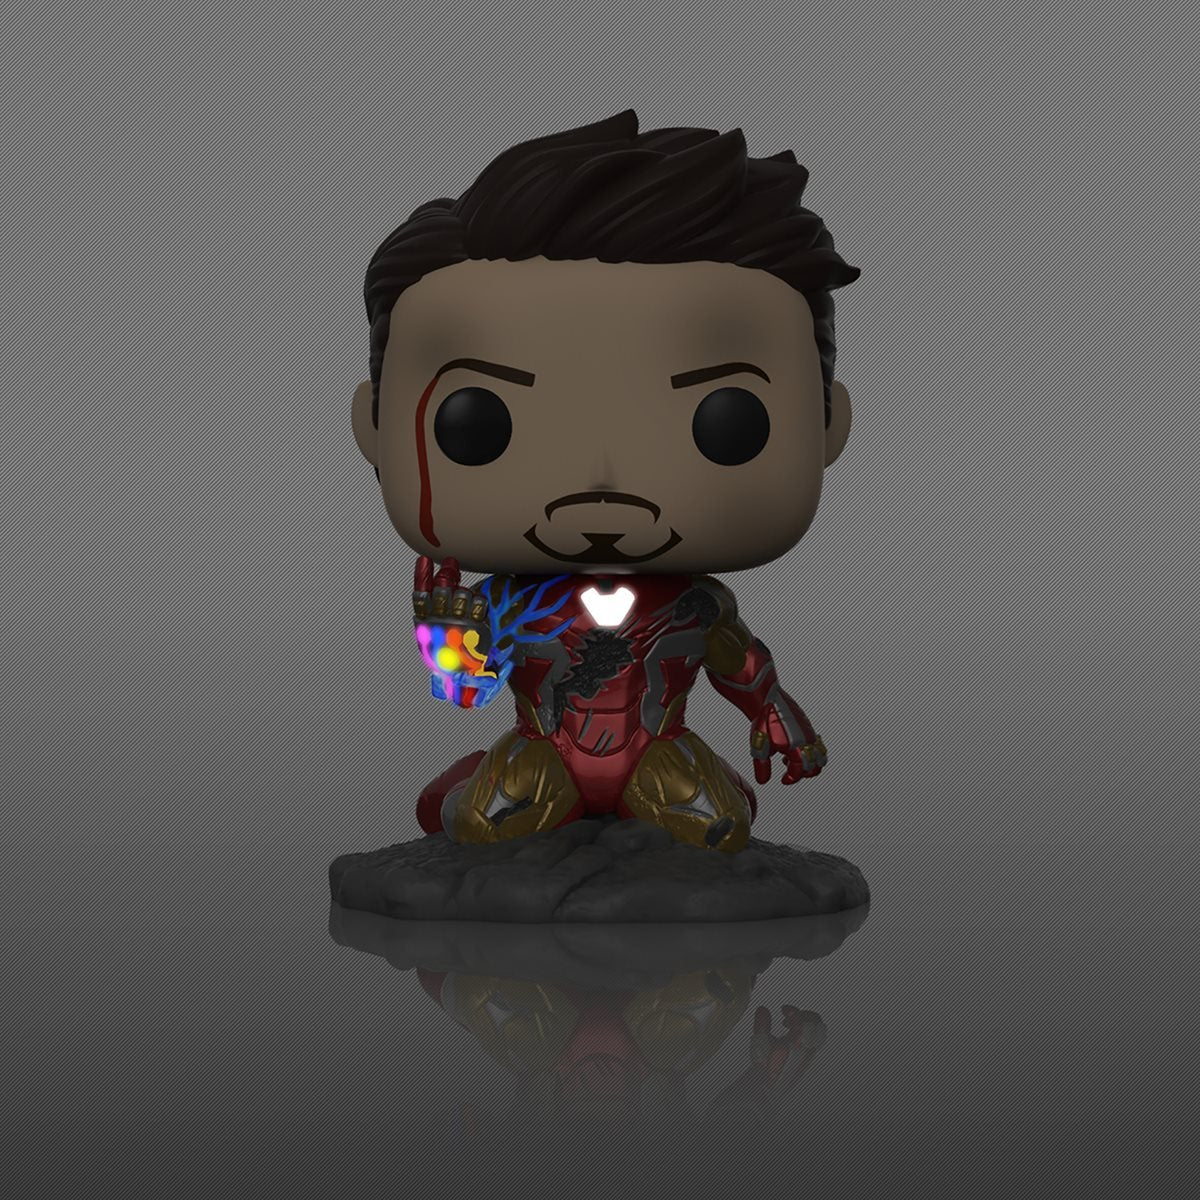 Avengers: Endgame I Am Iron Man GITD Deluxe Pop! Figure PX